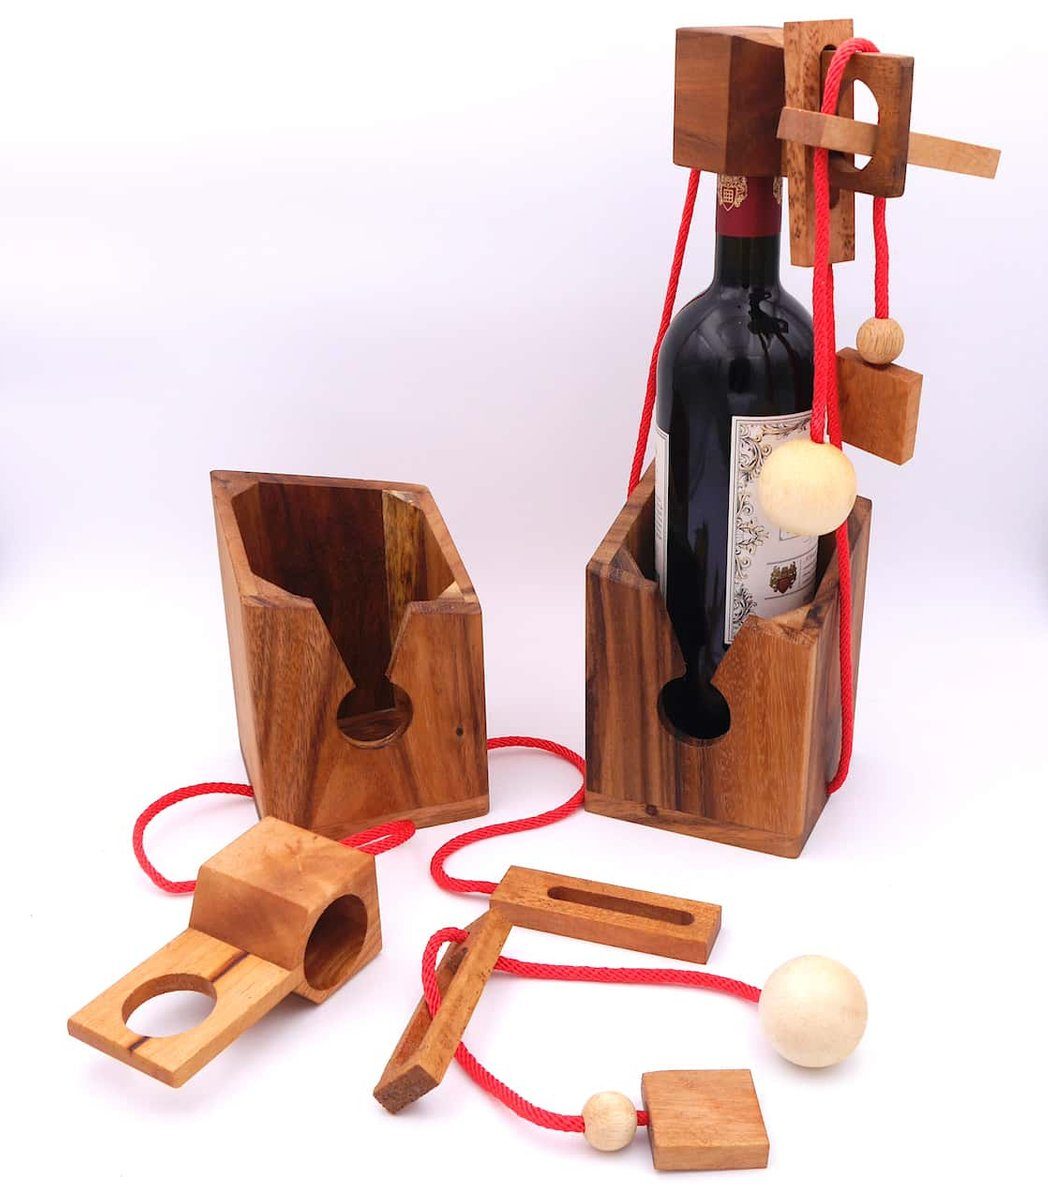 Denkspiele für Flaschentresor ROMBOL Holz Flaschen, rotes dunkles Geschenkverpackung Spiel, wiederverwendbar – Edles Denkspiel große Band Holz, aus